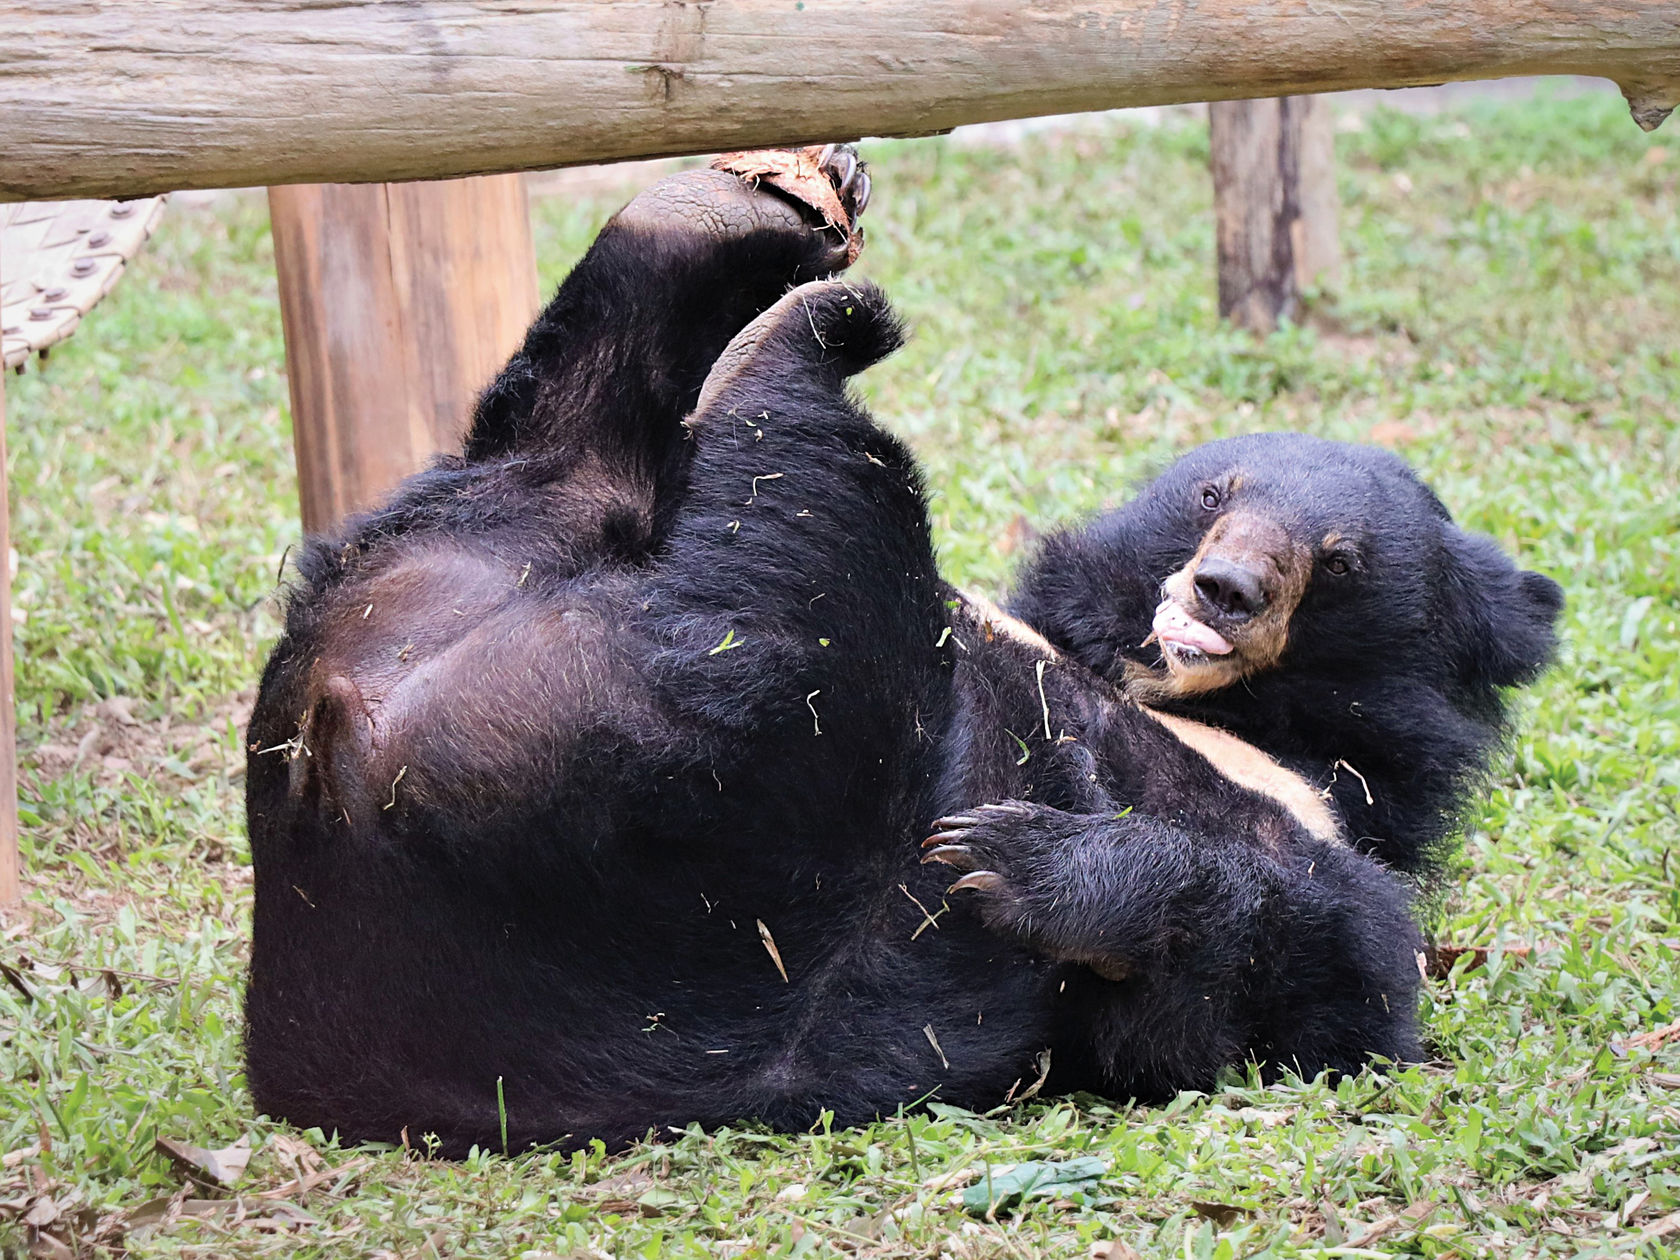 III. Diet of Asian Black Bears